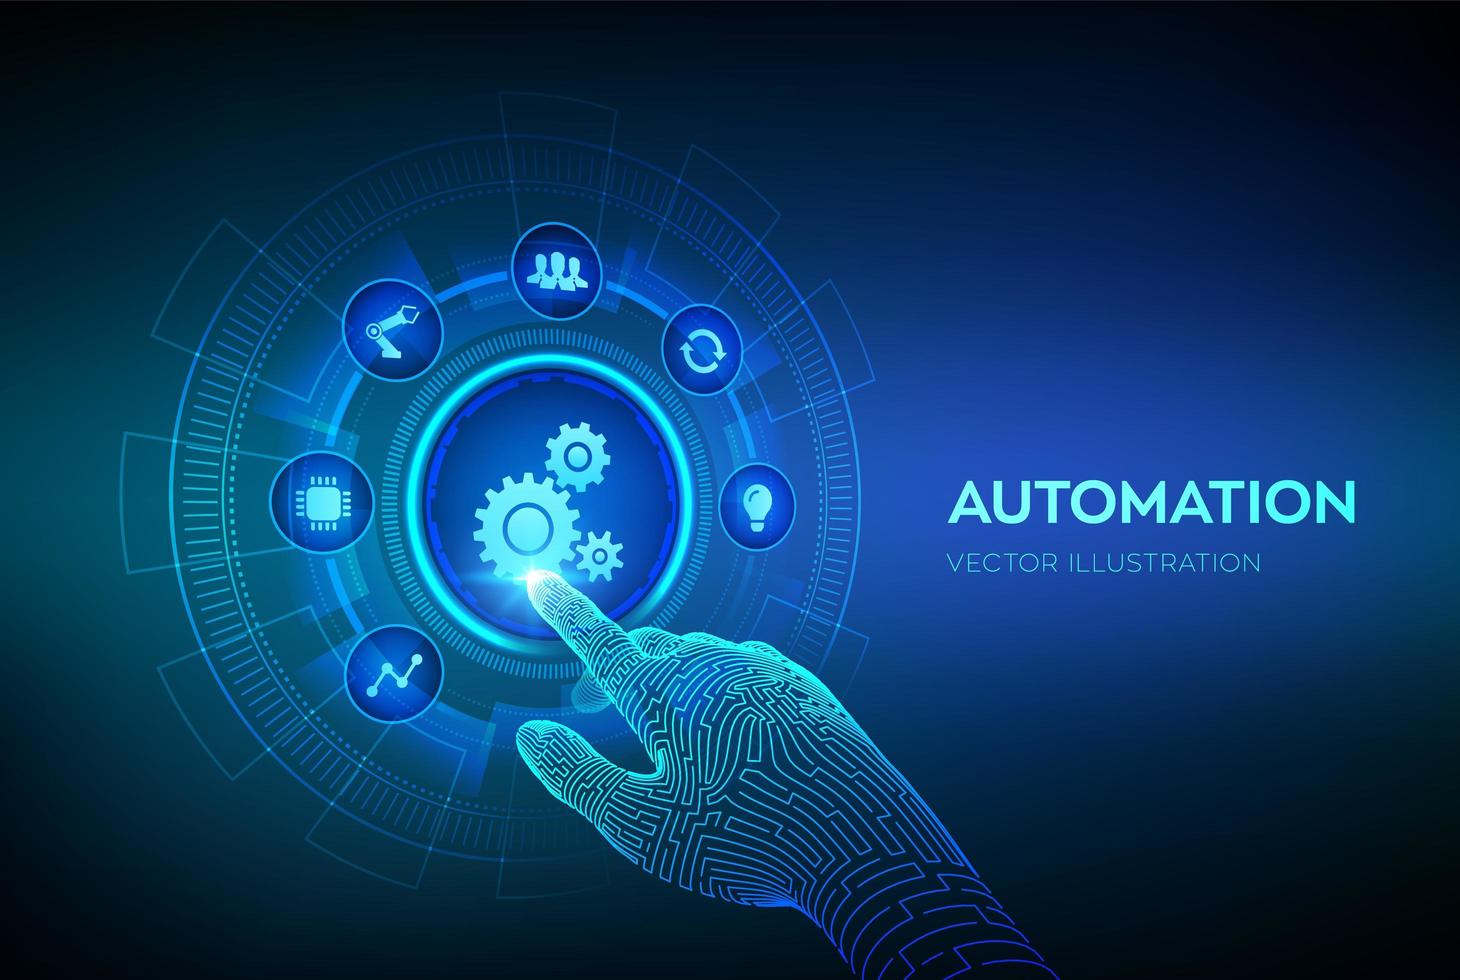 software de automação. Iot e conceito de automação como inovação, melhorando a produtividade em tecnologia e processos de negócios. interface digital tocante de mão robótica. vetor